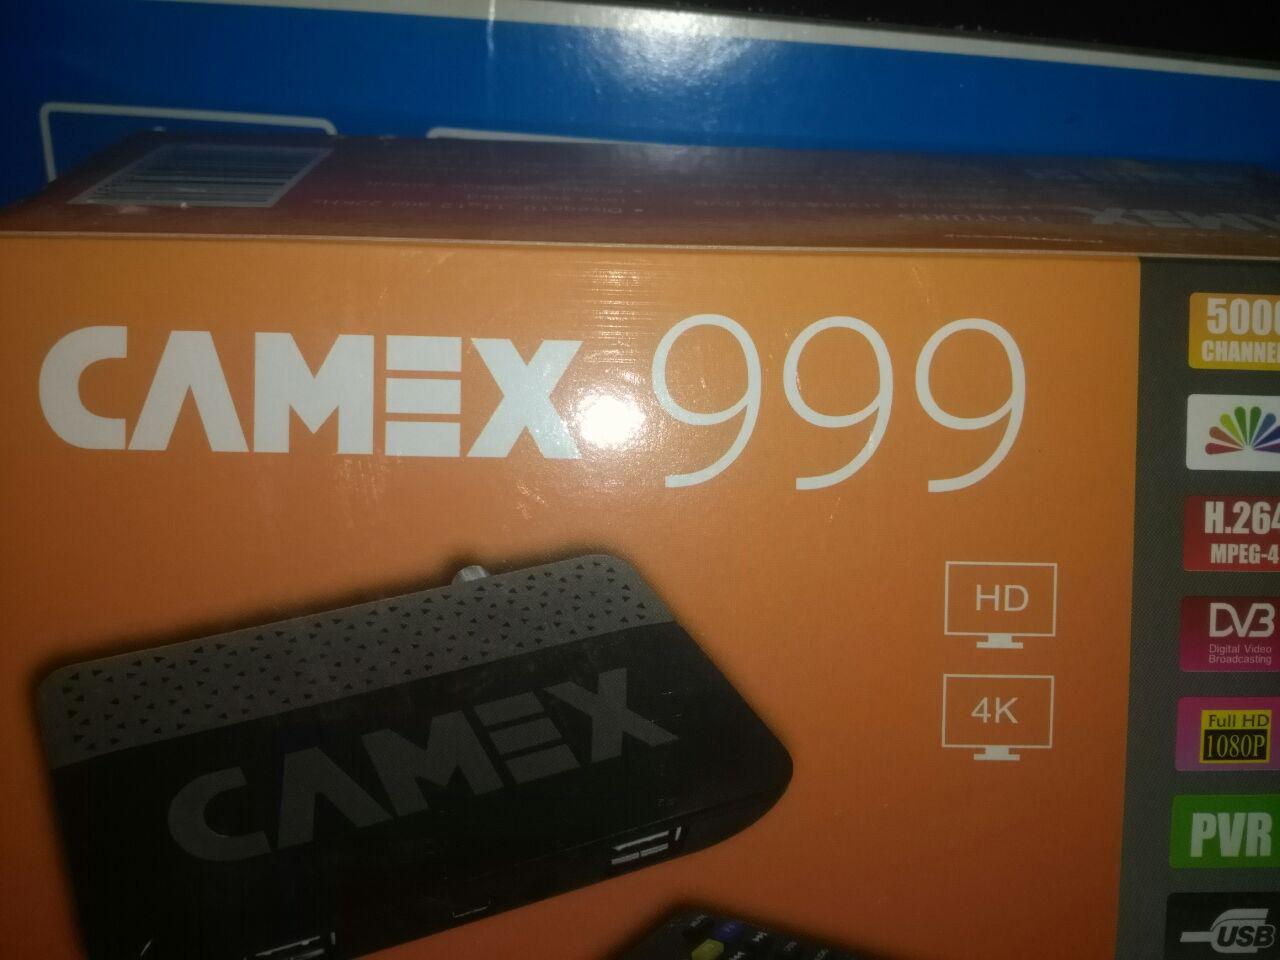 CAMEX 999 4K mini HD 2 USP 403180547